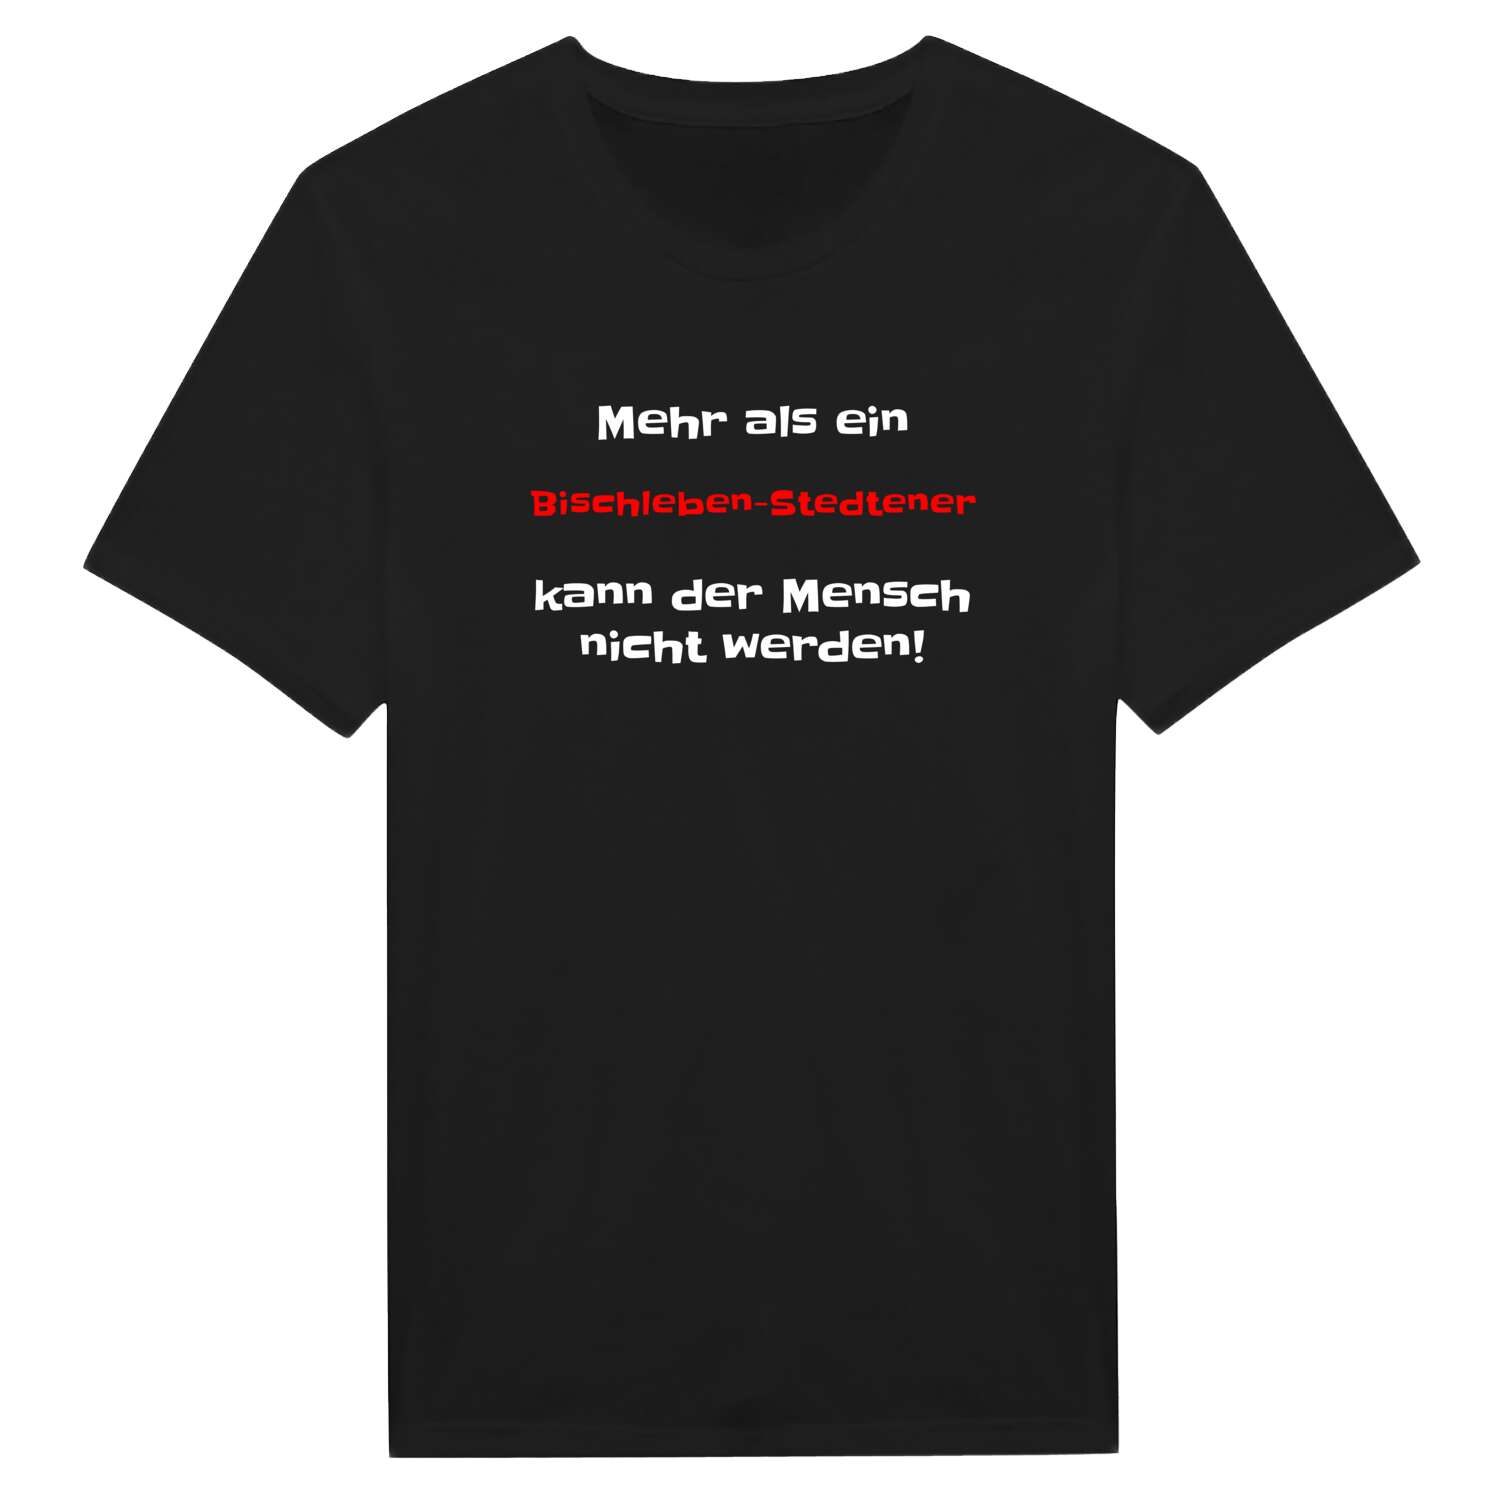 Bischleben-Stedten T-Shirt »Mehr als ein«